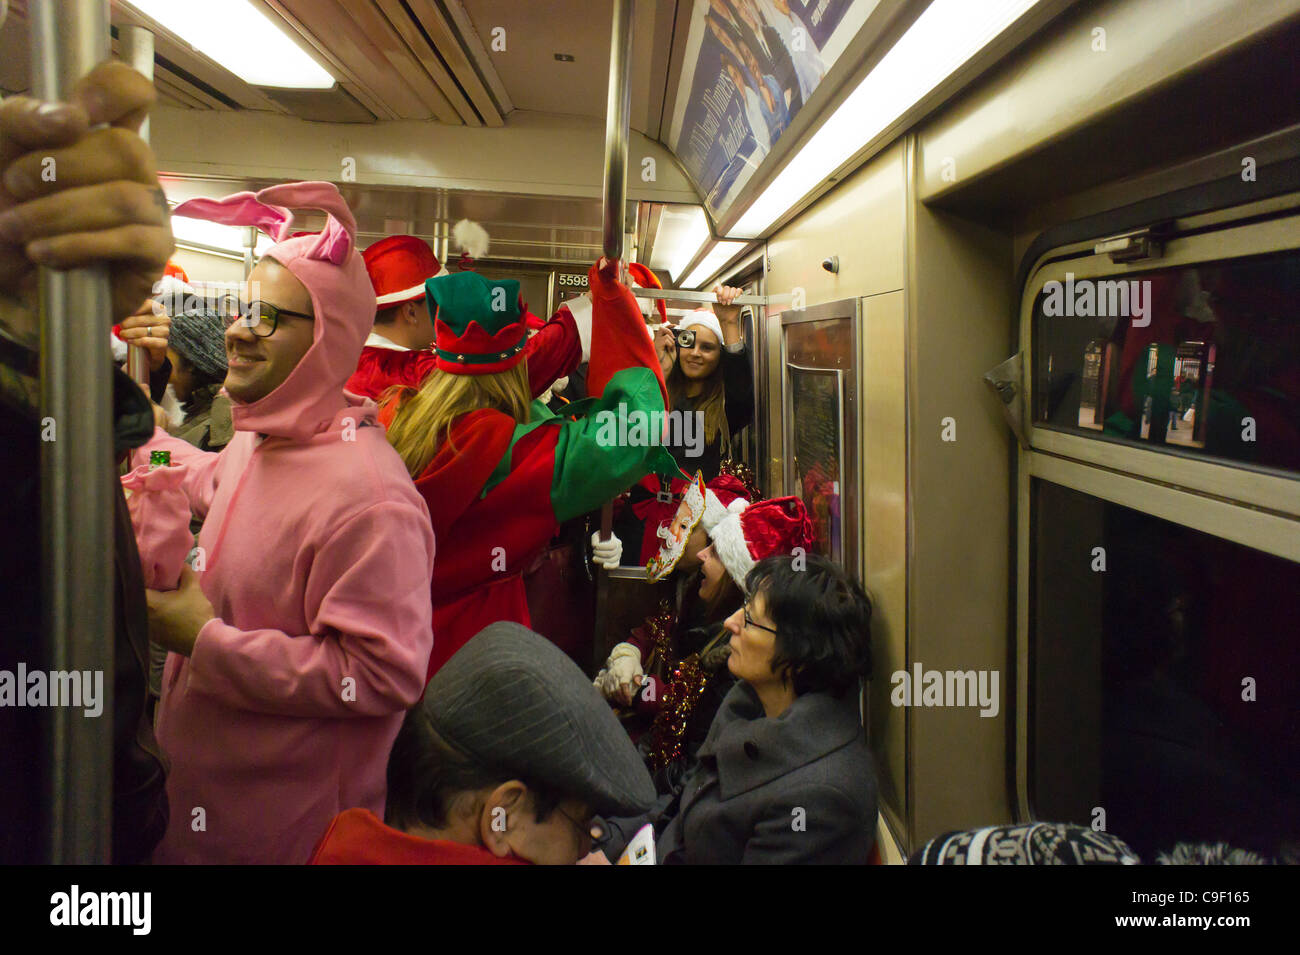 Les fêtards de Noël participant au voyage Santacon annuel dans le métro de New York le Samedi, Décembre 10, 2011. Santacon, principalement un pub crawl à Santa et d'autres costumes connexes Noël (à l'exception d'un participant qui a obtenu ses vacances mélangés), attire des centaines de masqueraders passe Banque D'Images